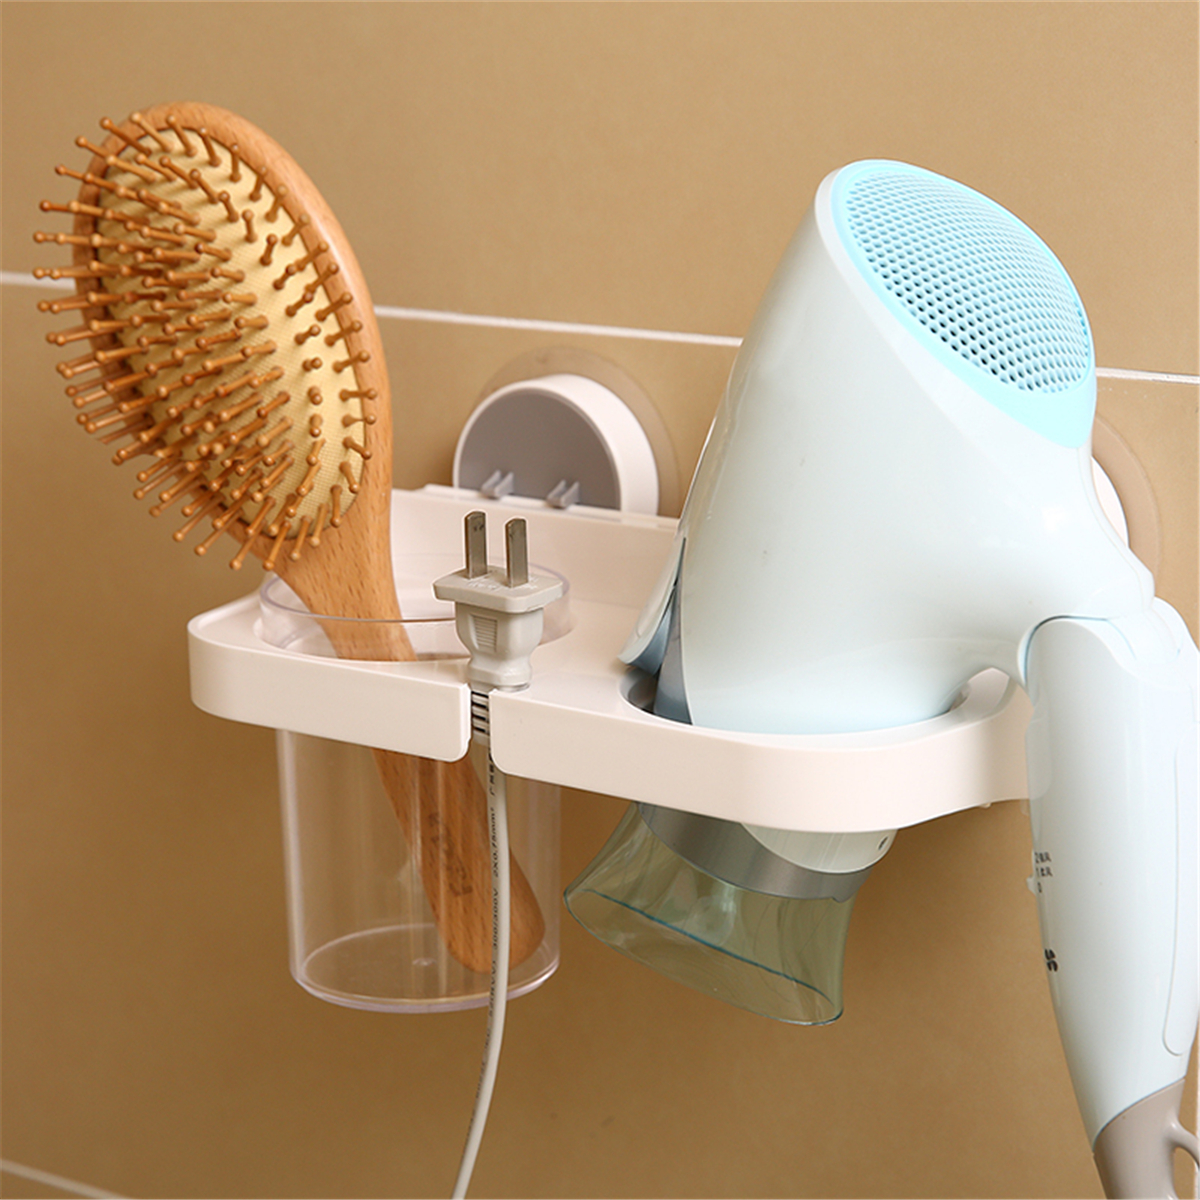 Bathroom-Punch-Free-Multifunctional-Hair-Dryer-Rack-1649041-1